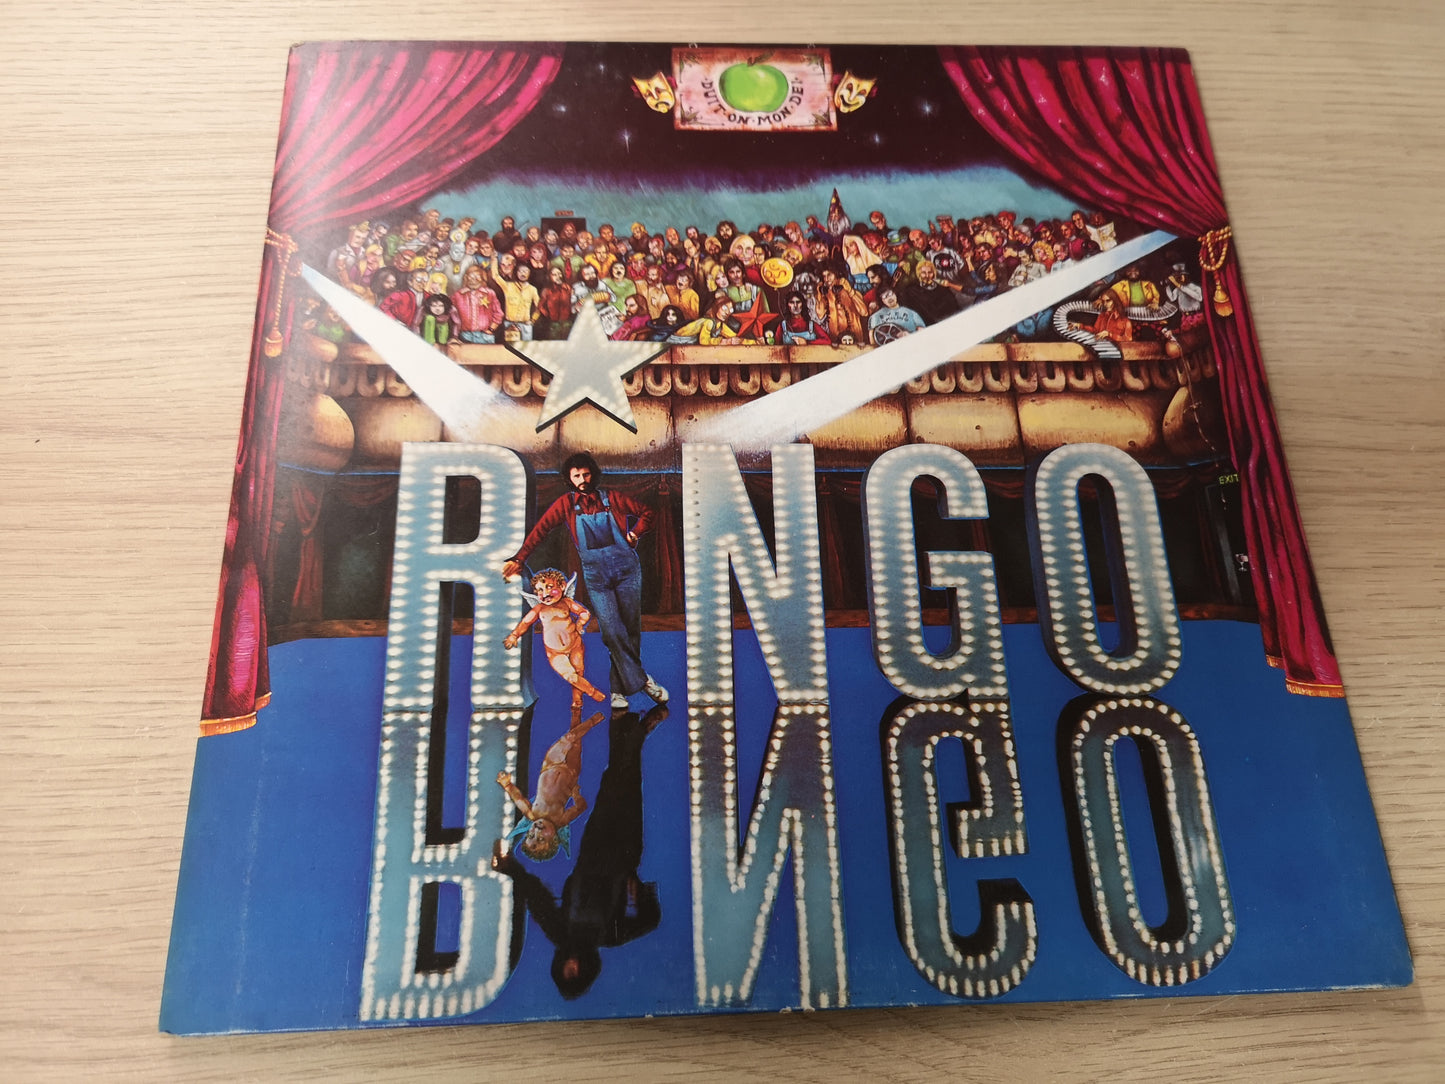 Ringo Starr "Ringo" Orig UK 1973 EX/EX (w/ 20 Pages Booklet)